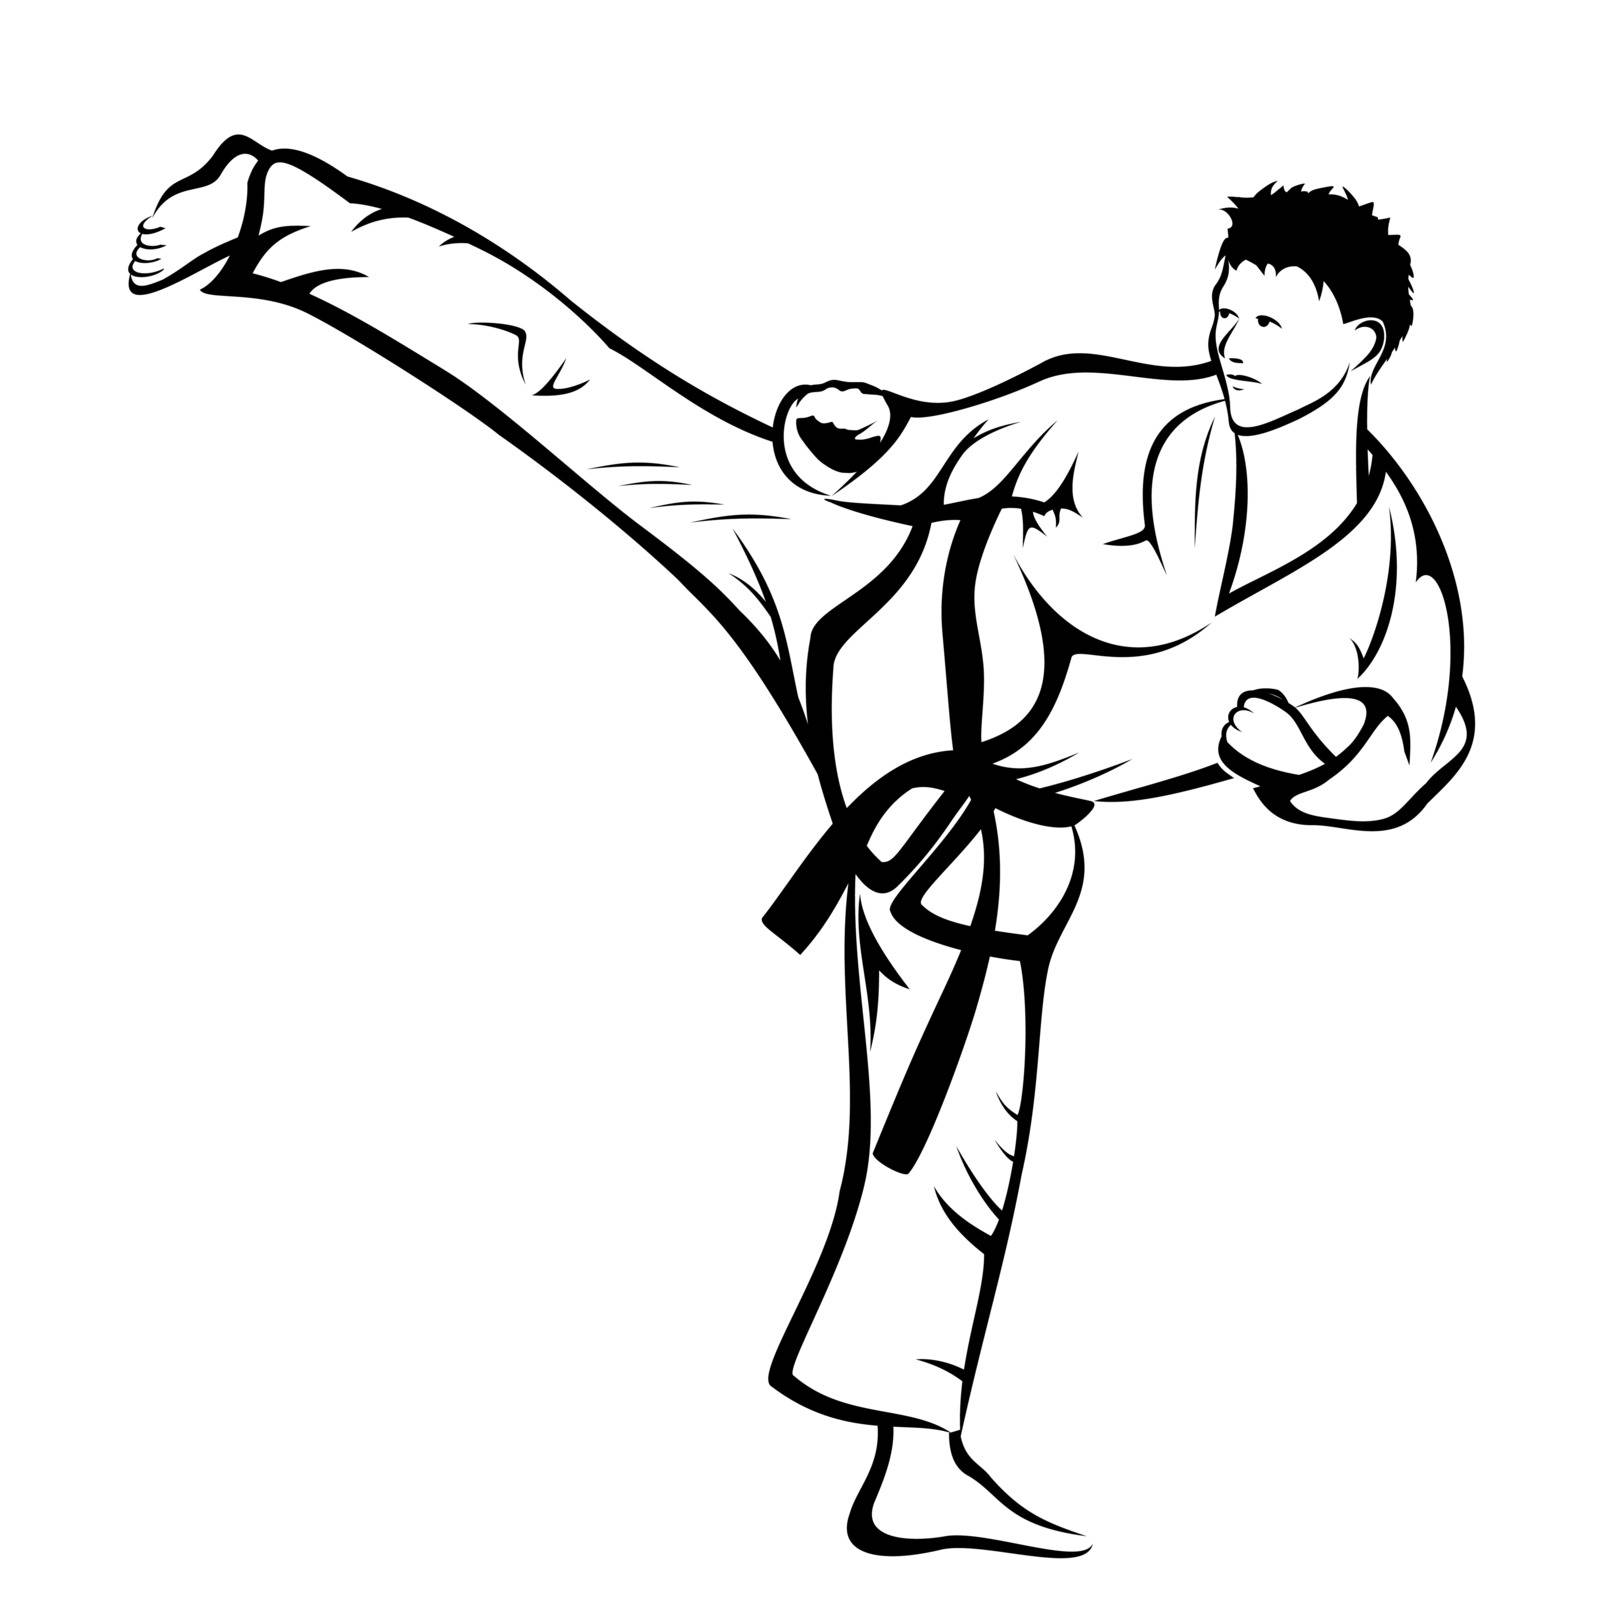 Karate kick by fxmdk